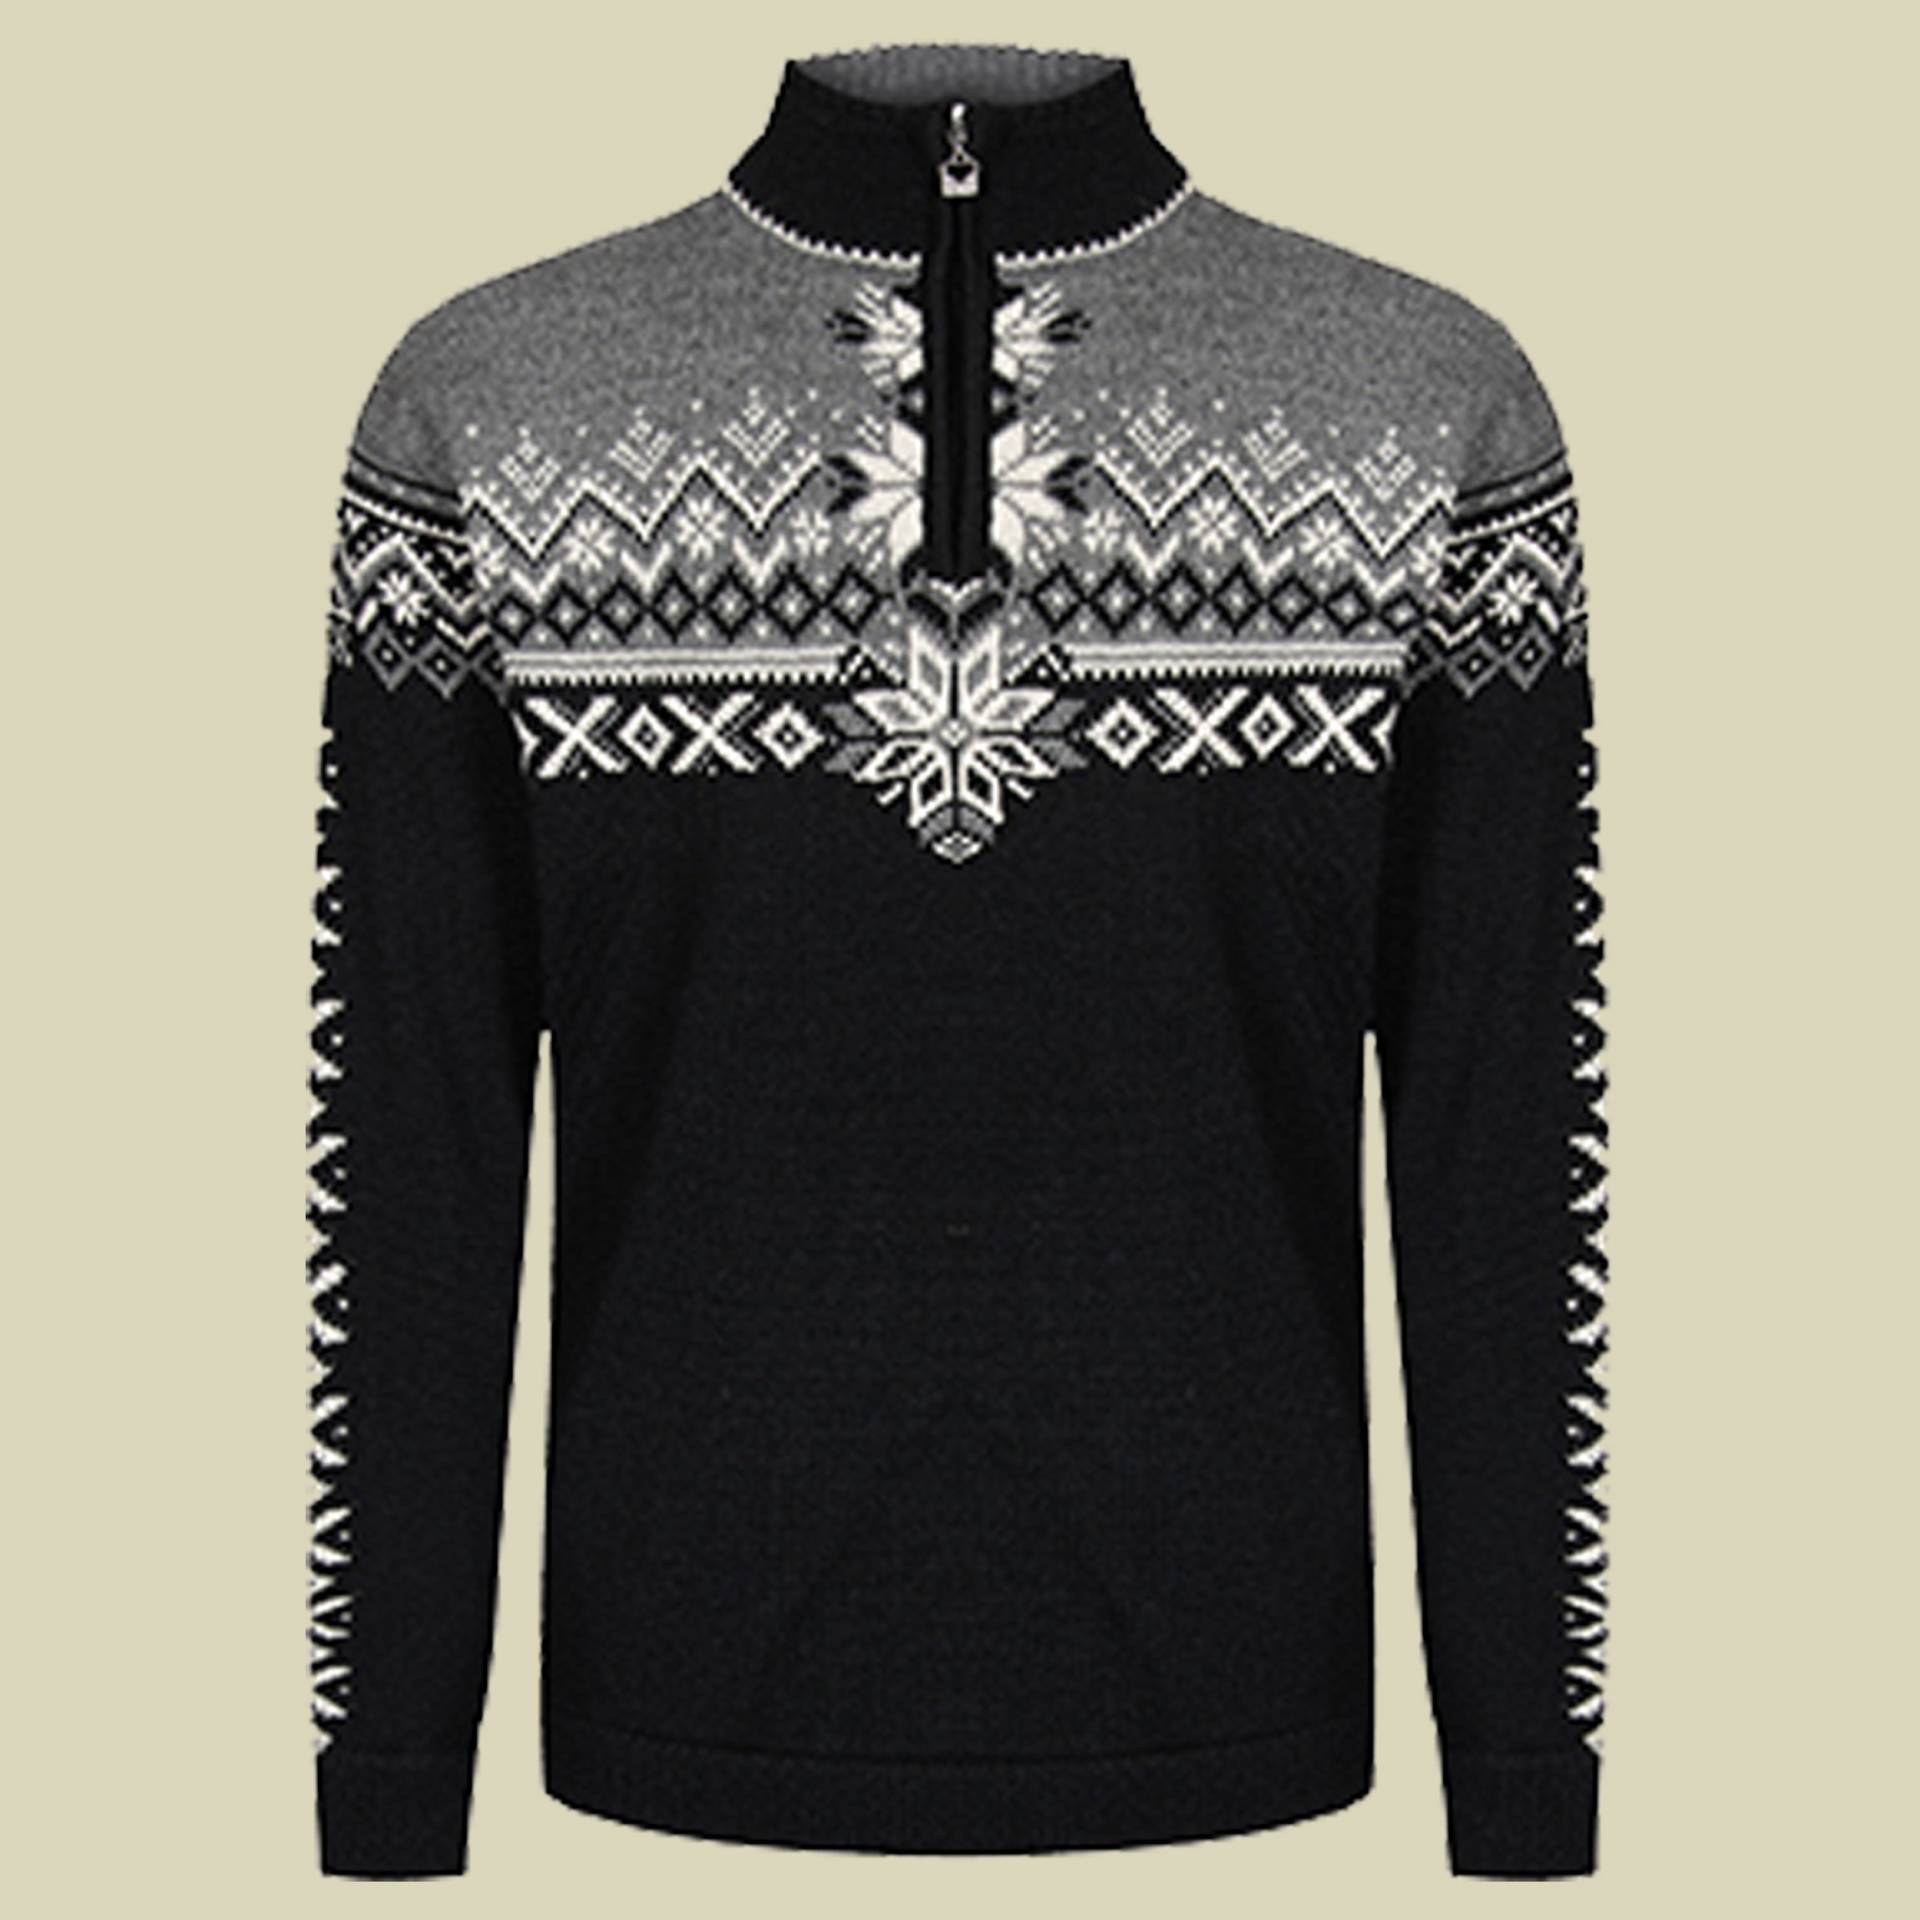 140th Anniversary Sweater Men Größe XXL Farbe black/smoke/off white von Dale of Norway